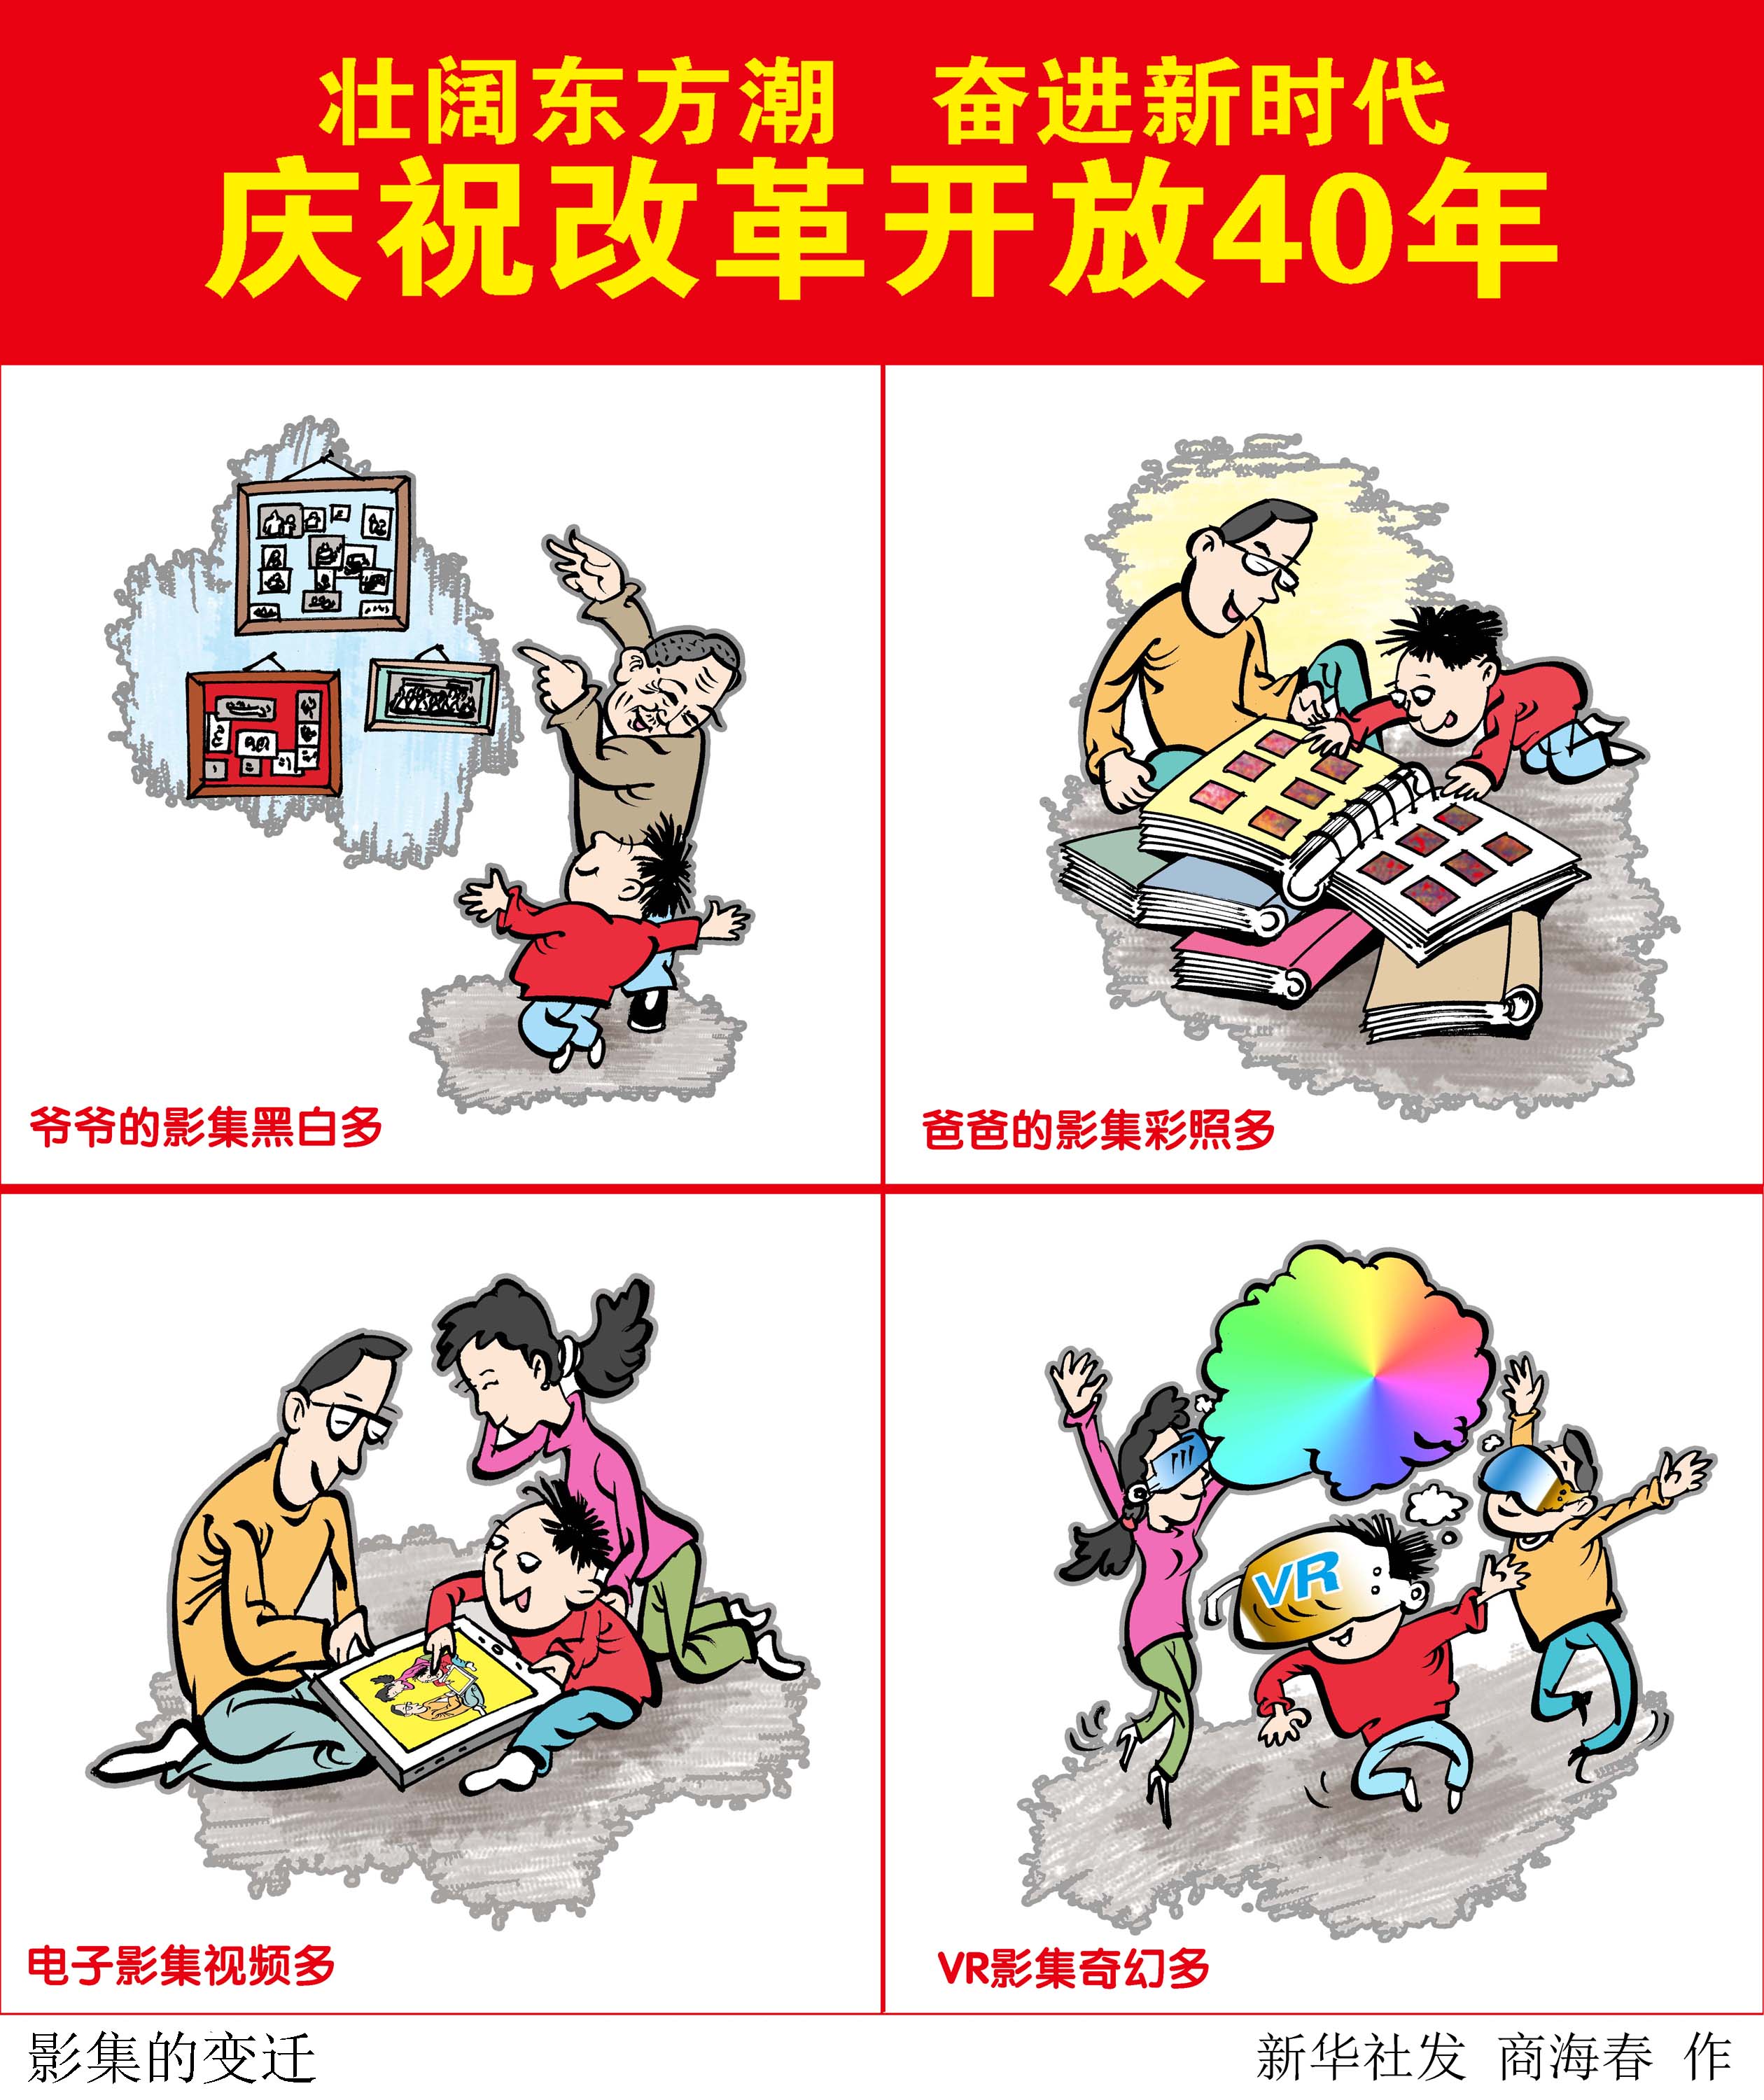 新华社图表,北京,2018年12月2日 漫画:影集的变迁(横版) 新华社发 商